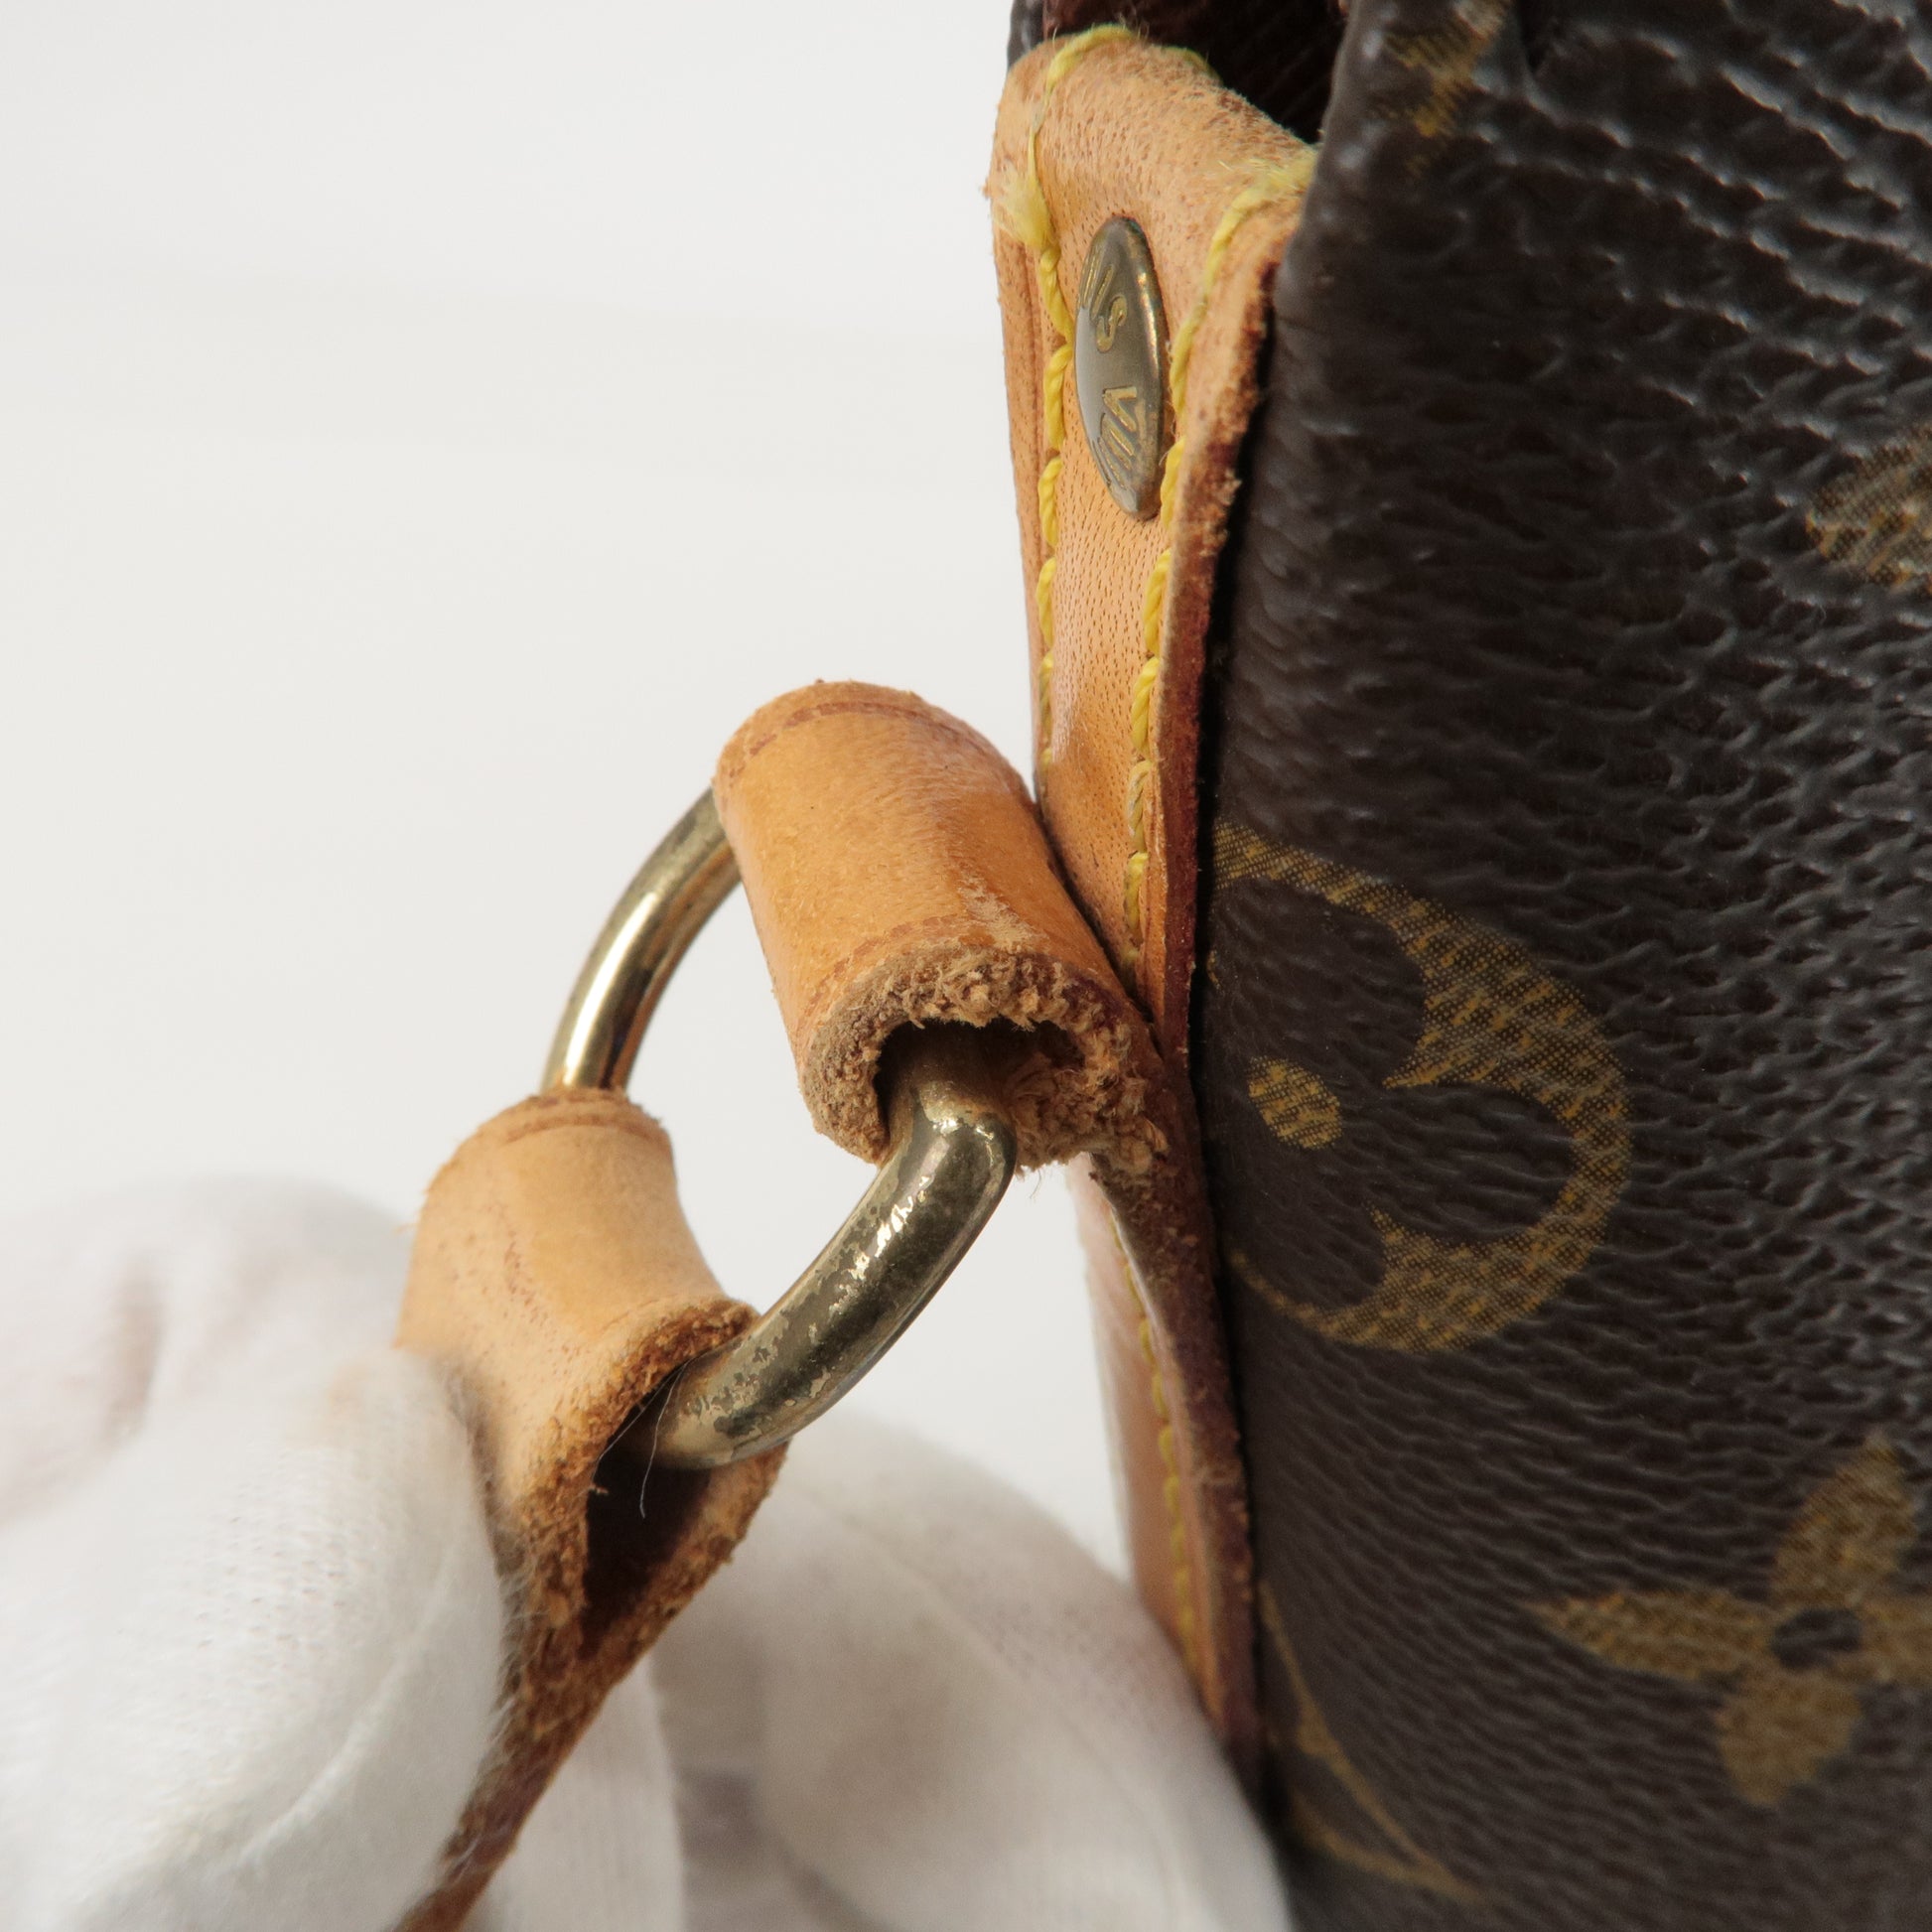 Louis Vuitton Drouot vintage crossbody bag